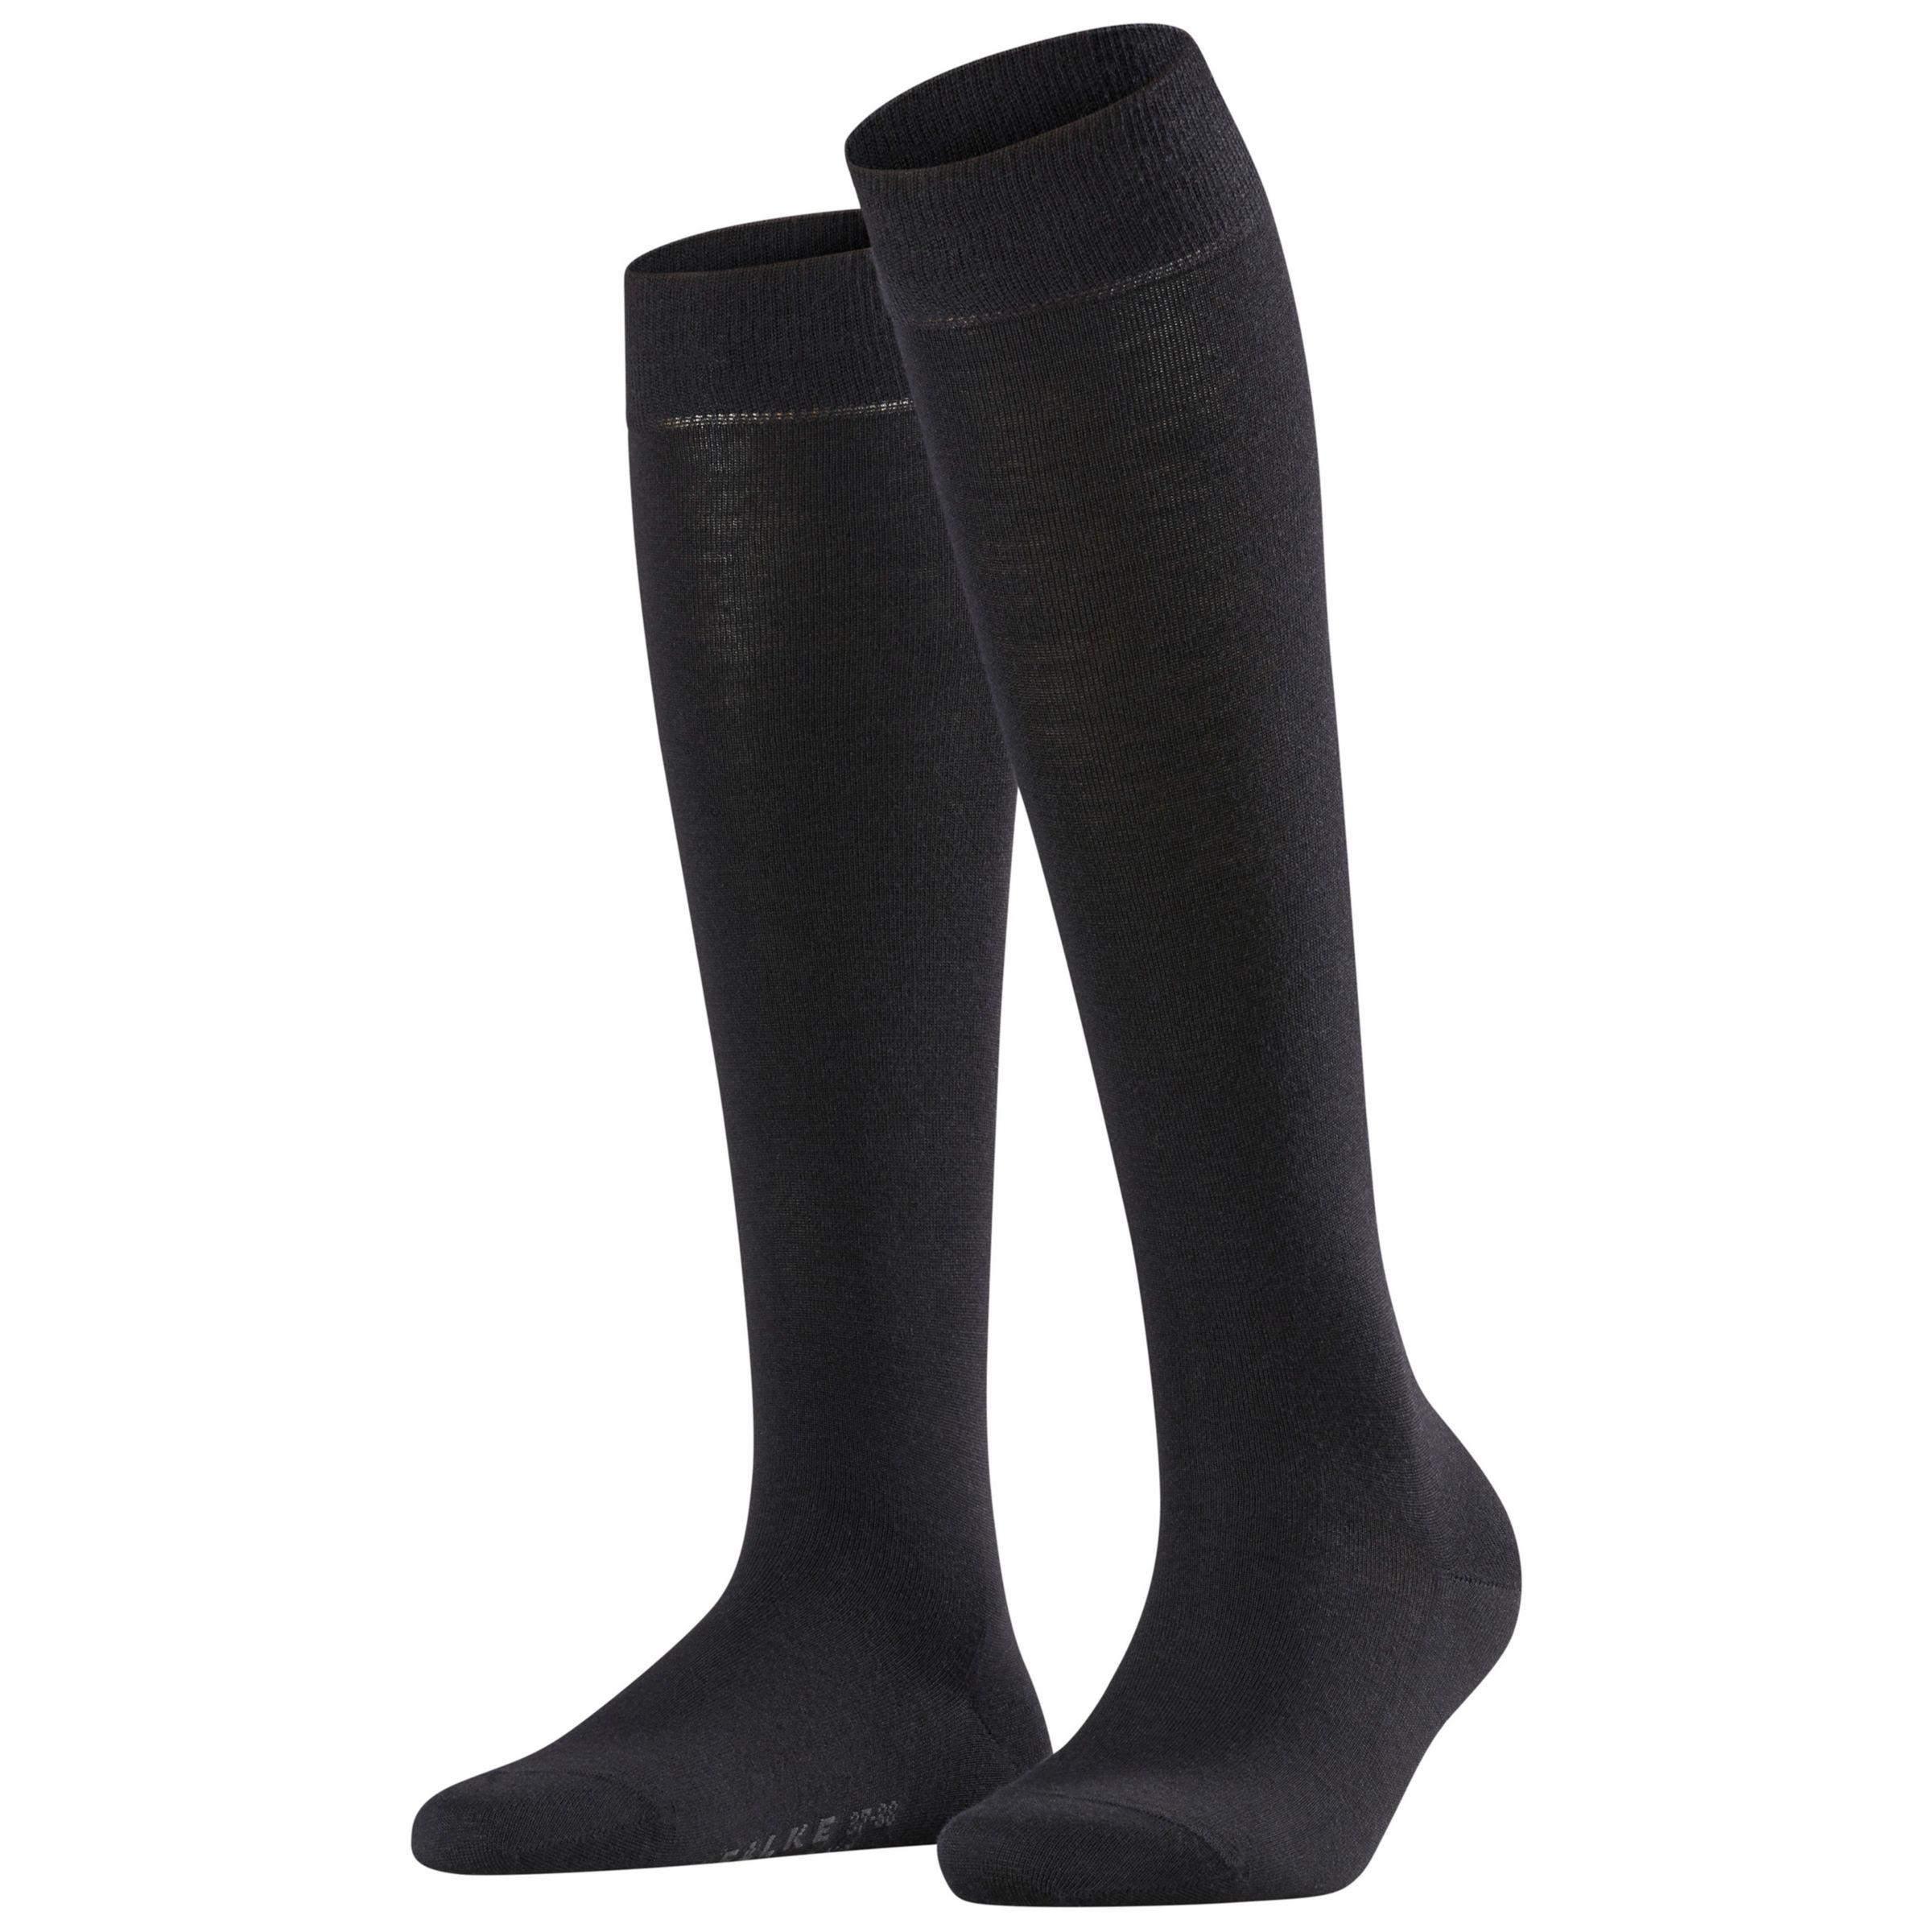 FALKE Soft Merino Blend Knee High Socks, Black at John Lewis & Partners